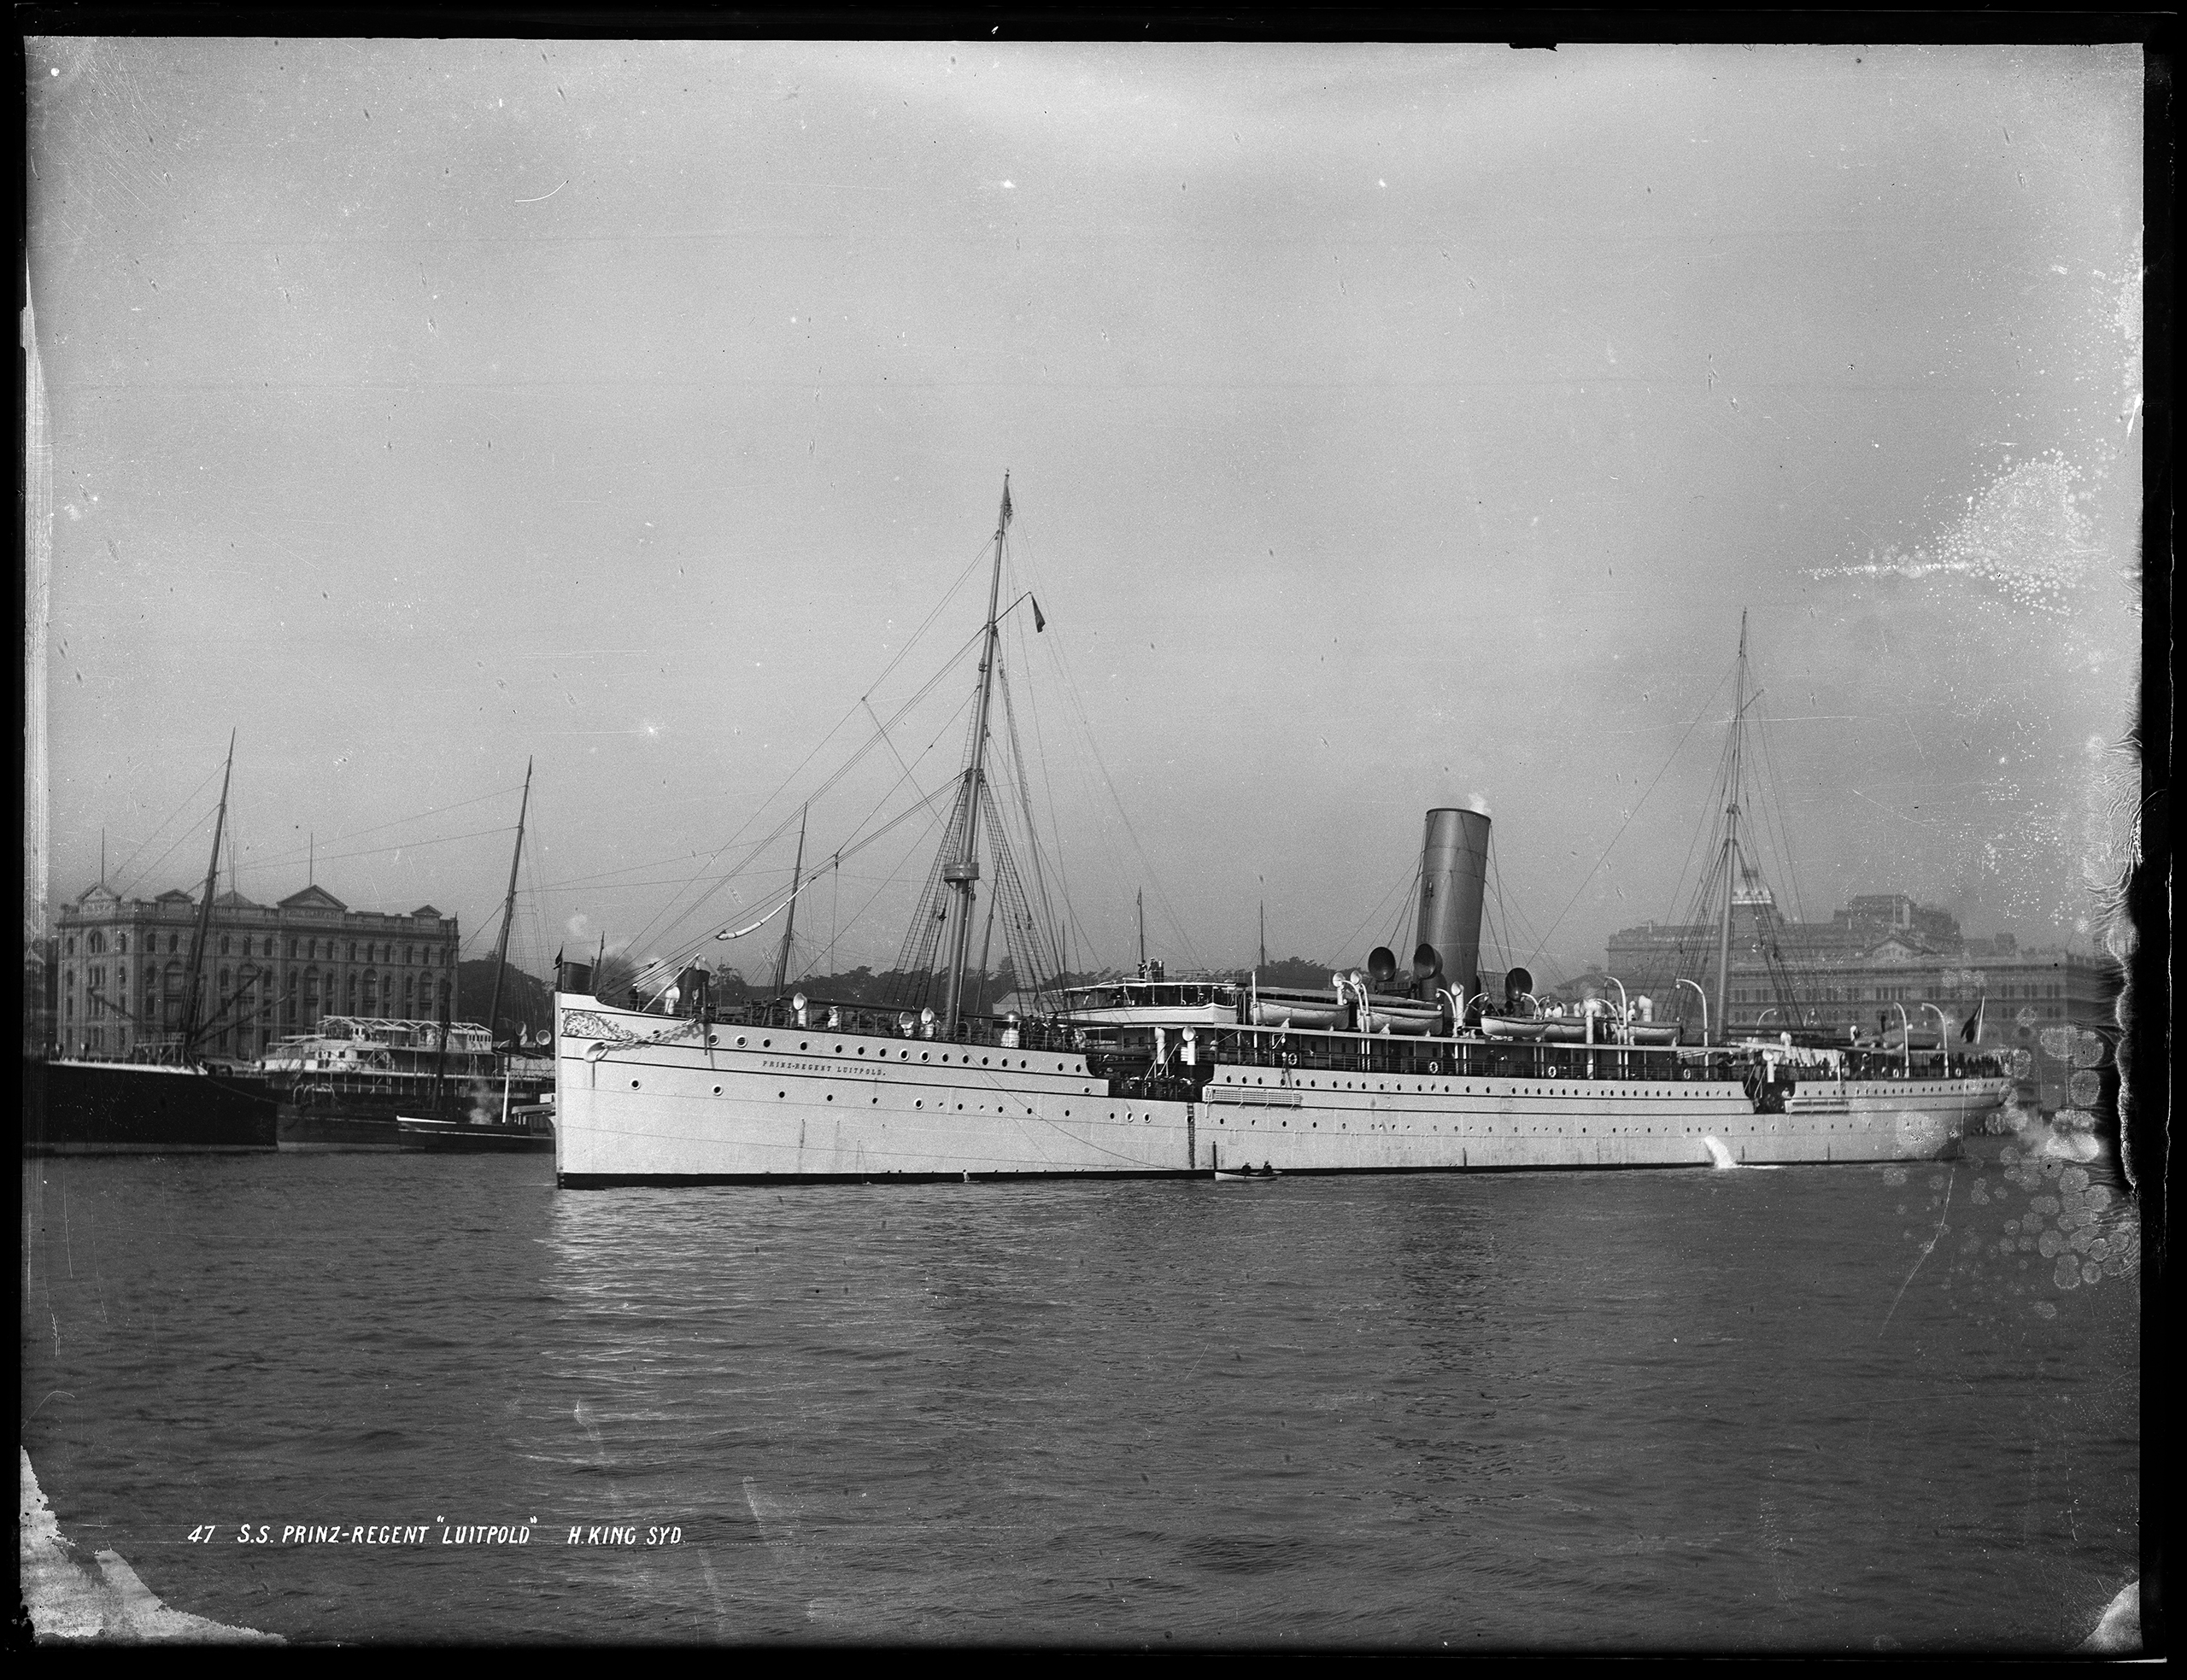 Glass plate negative of Norddeutscher Lloyd ocean liner 'Prinz-Regent Luitpold' departing Sydney Harbour, c.1900